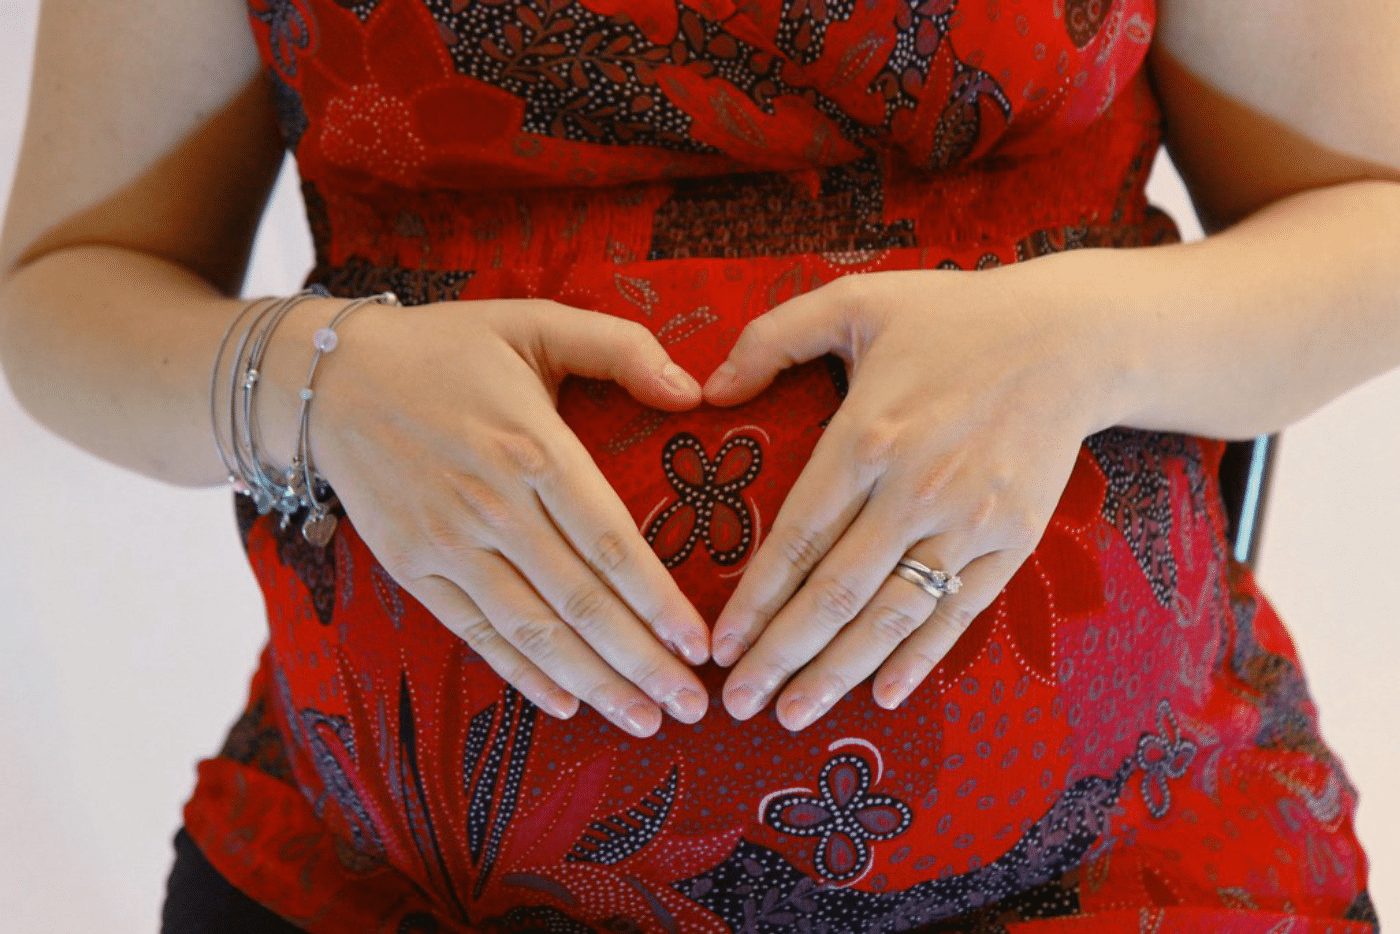  الشهر الثامن من الحمل ،  وزن الجنين في الشهر الثامن 